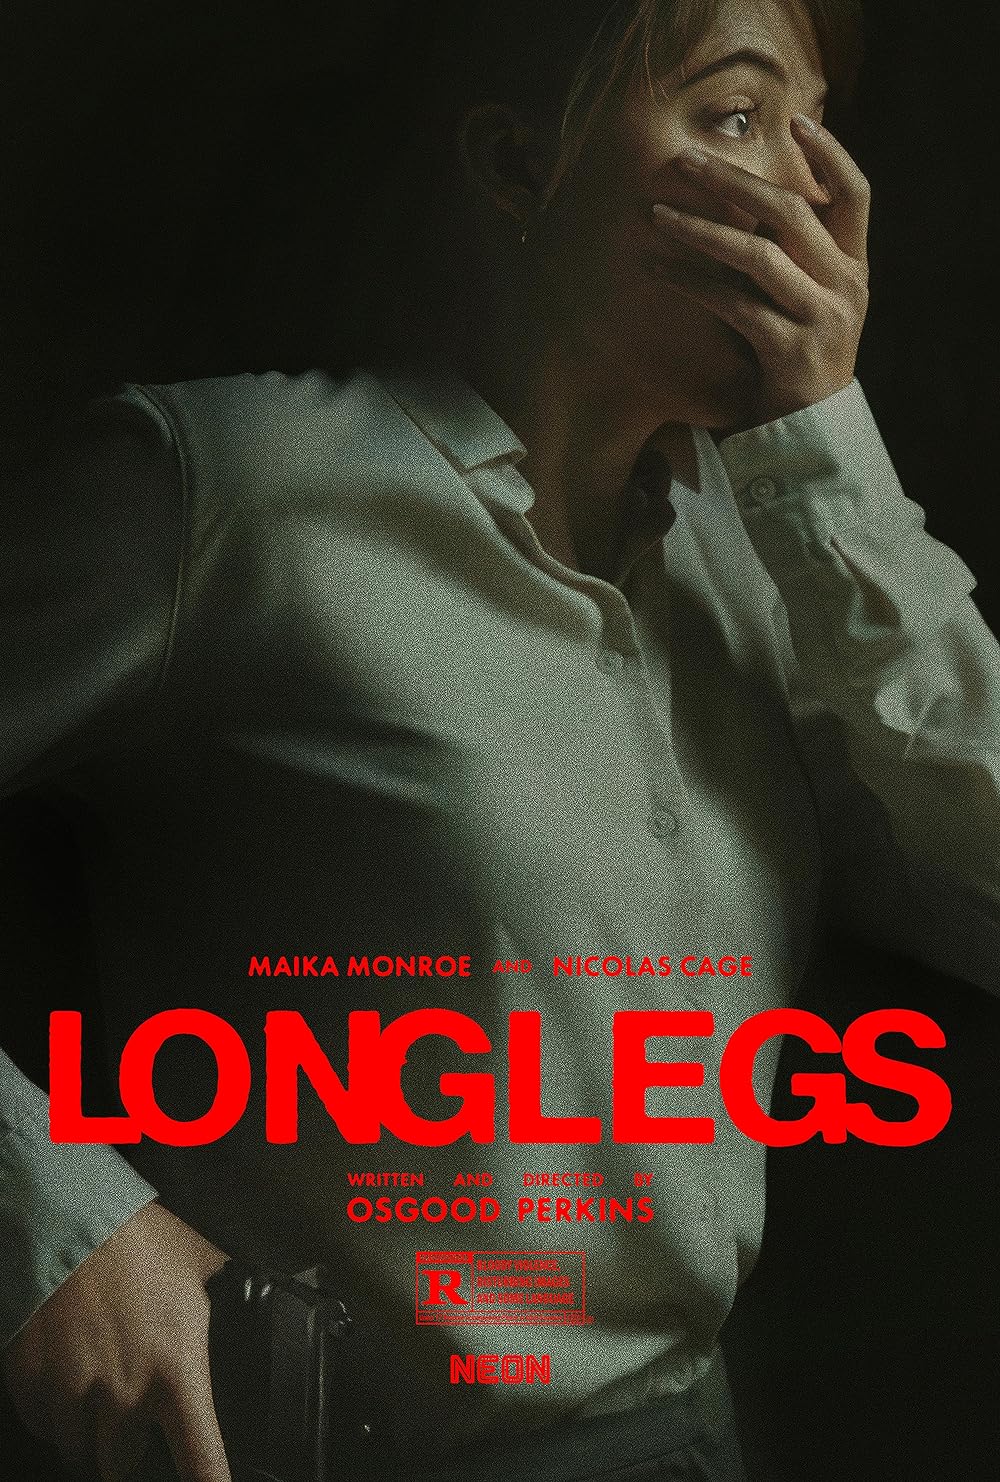 Longlegs: il nuovo trailer del film con Nicolas Cage serial killer